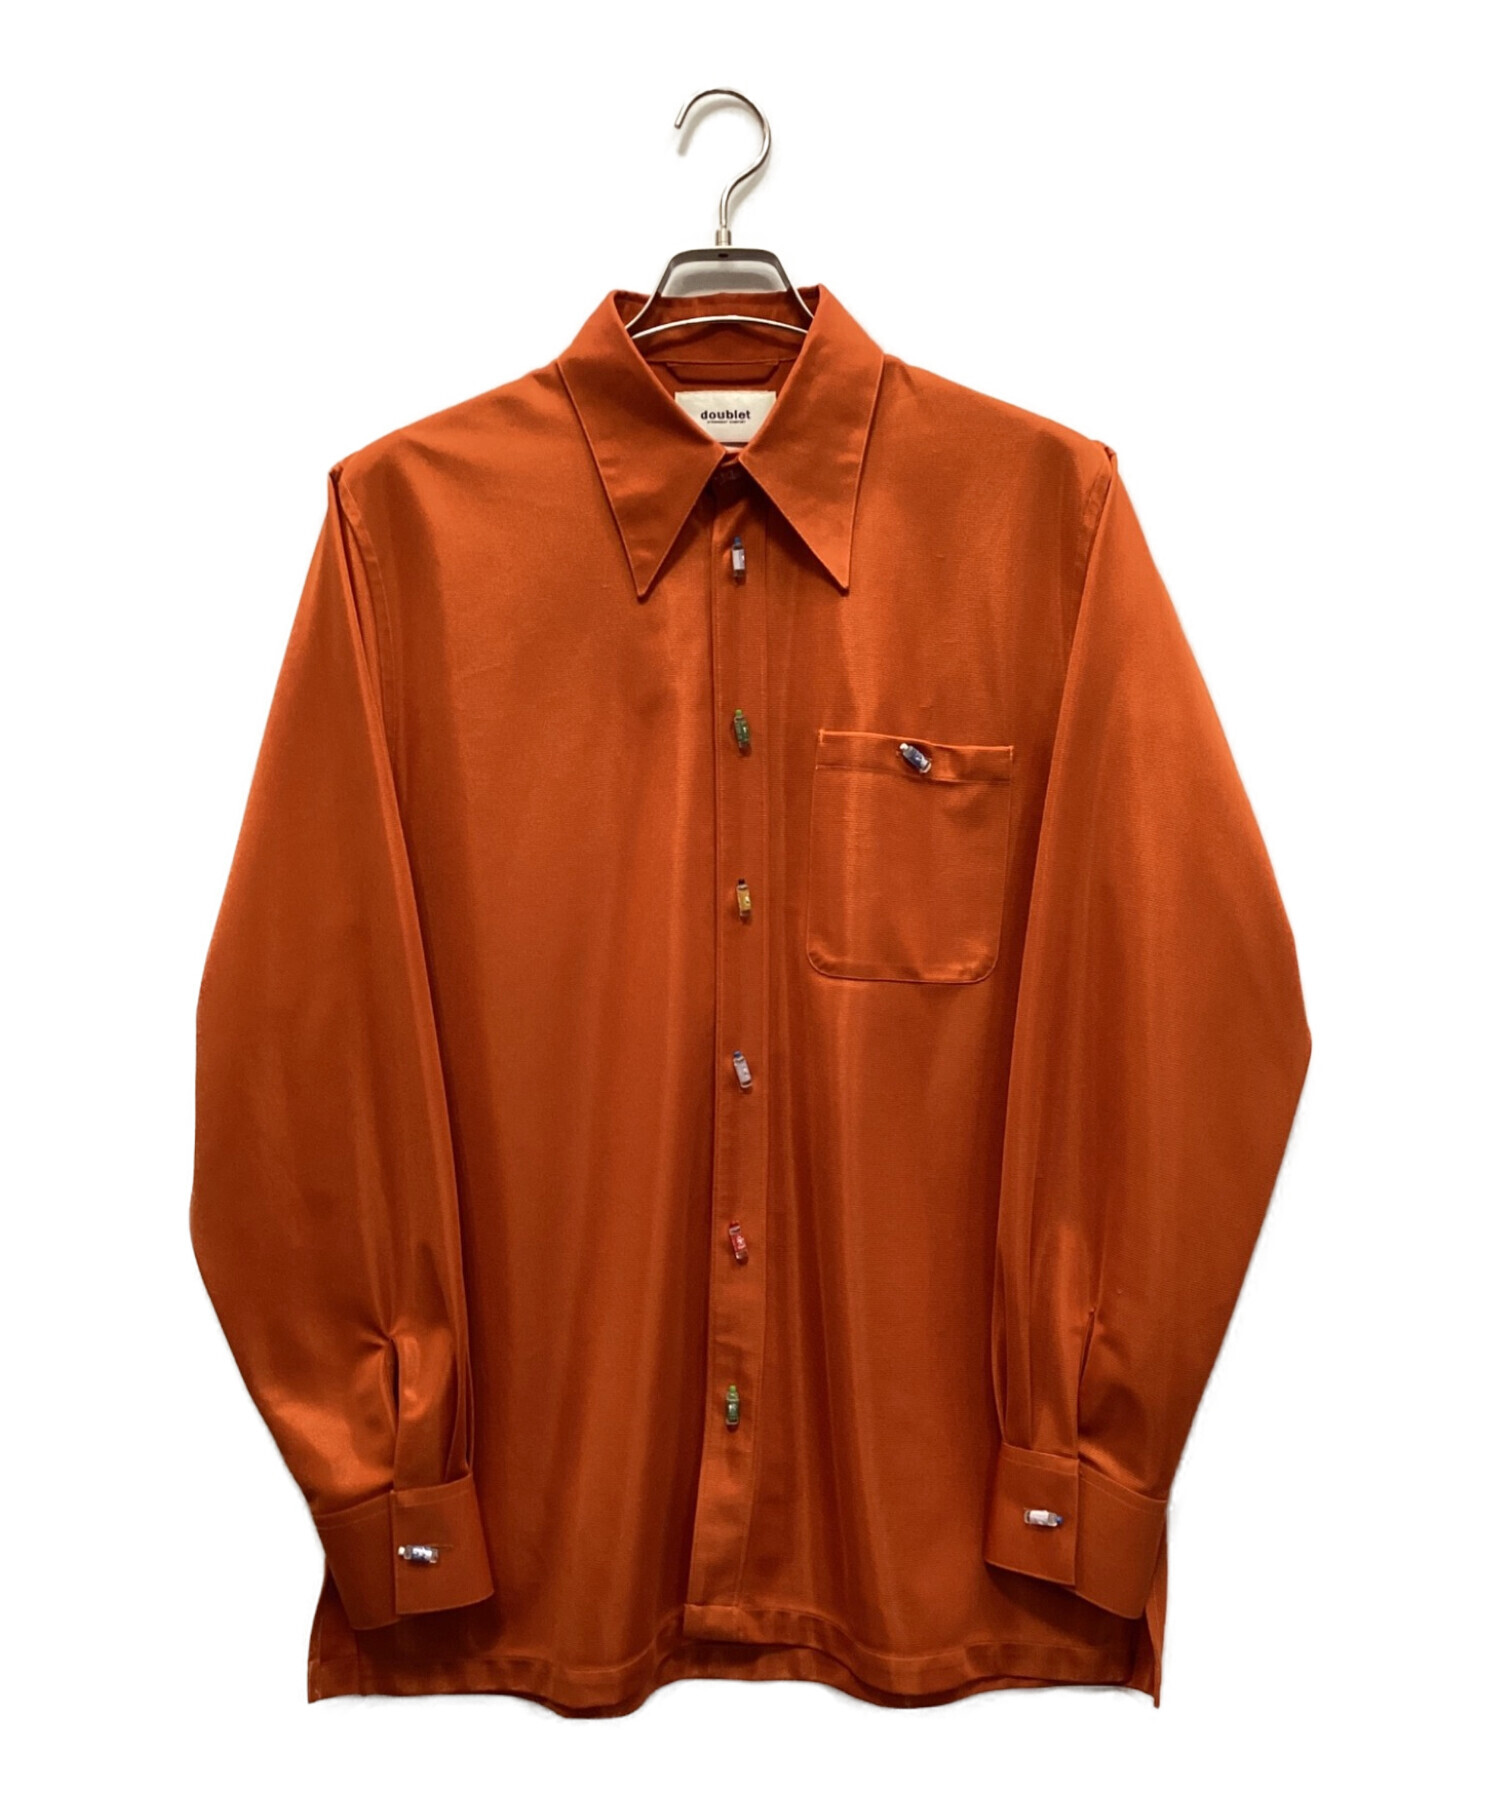 doublet (ダブレット) リサイクルペットボトルシャツ オレンジ サイズ:S